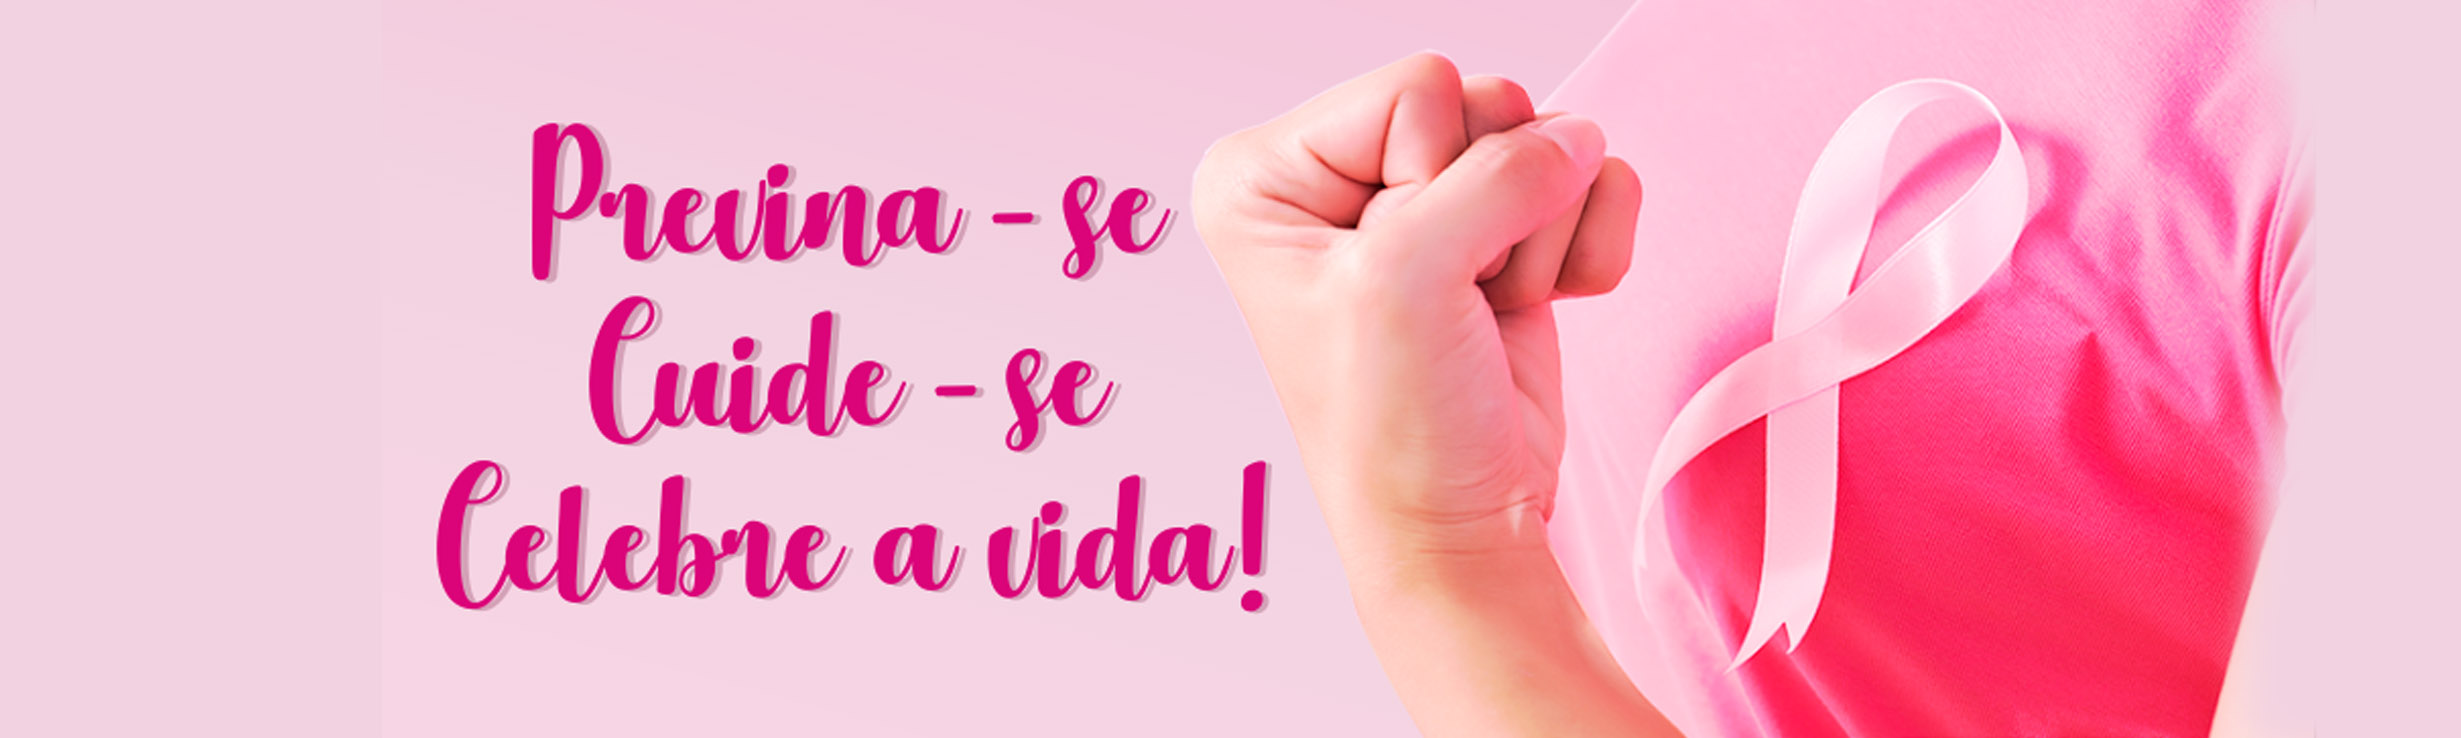 Sinteps apoia a campanha do ‘Outubro Rosa’ e reforça reivindicação de mais recursos para a saúde pública. Vamos vencer o câncer de mama